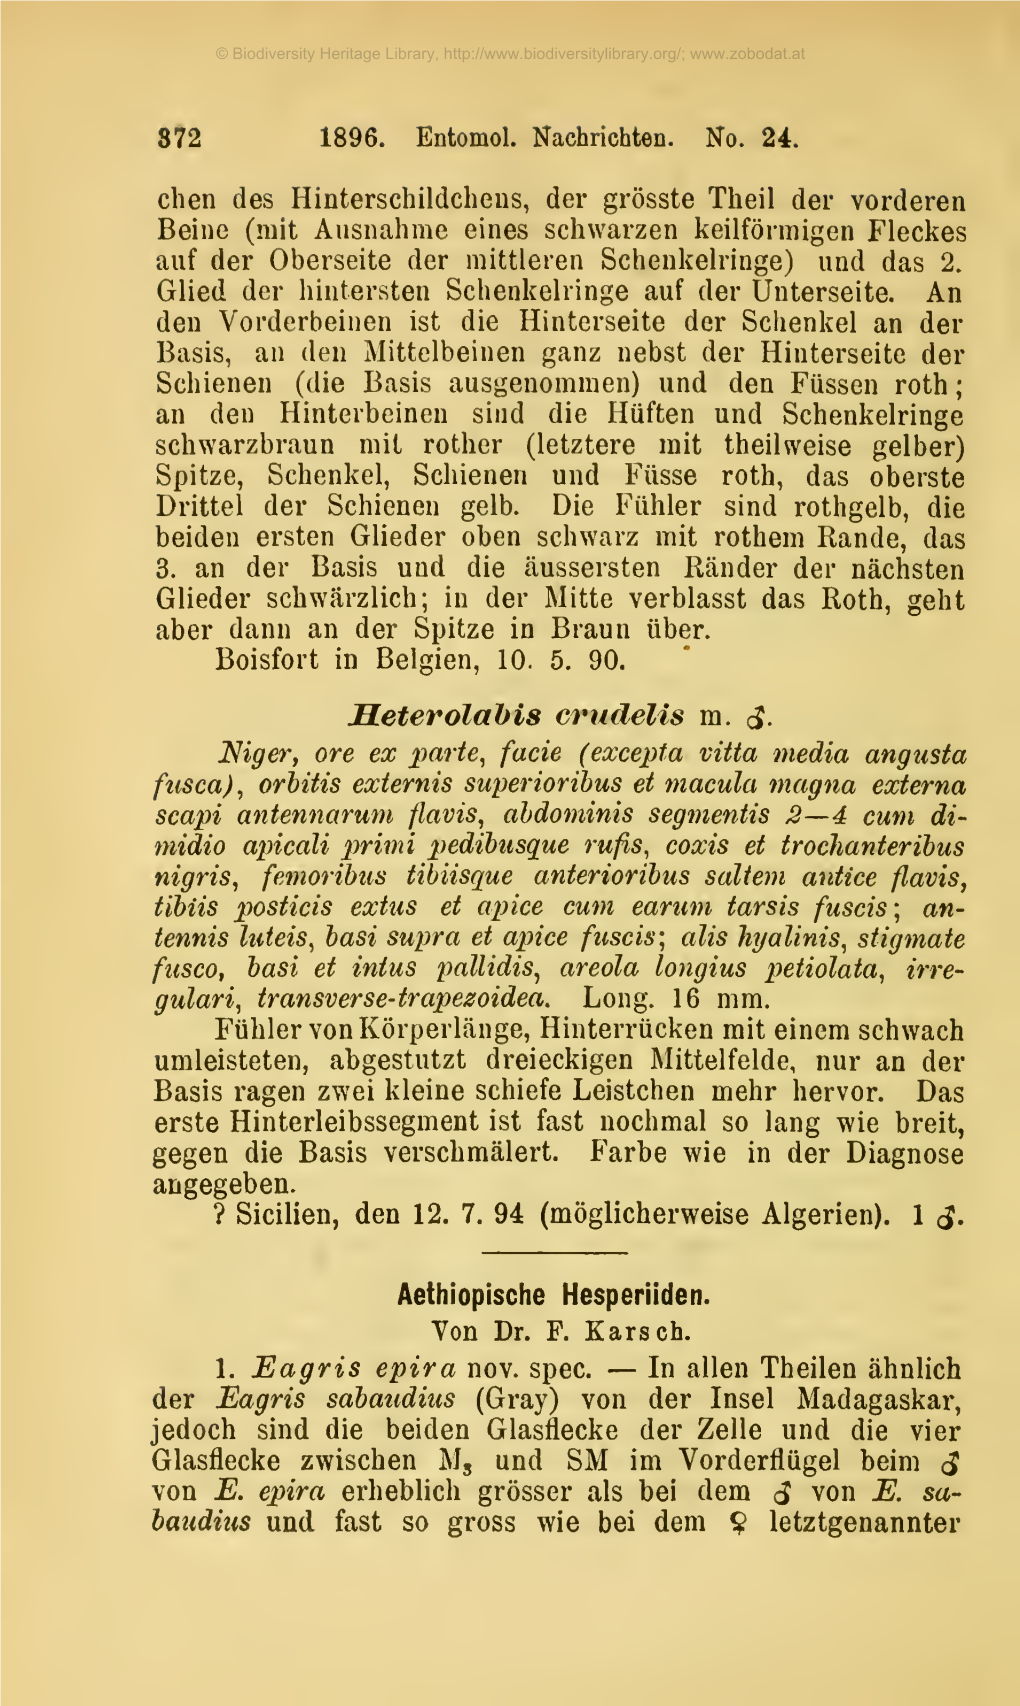 Aethiopische Hesperiiden. Ferdinand Anton Franz Karsch